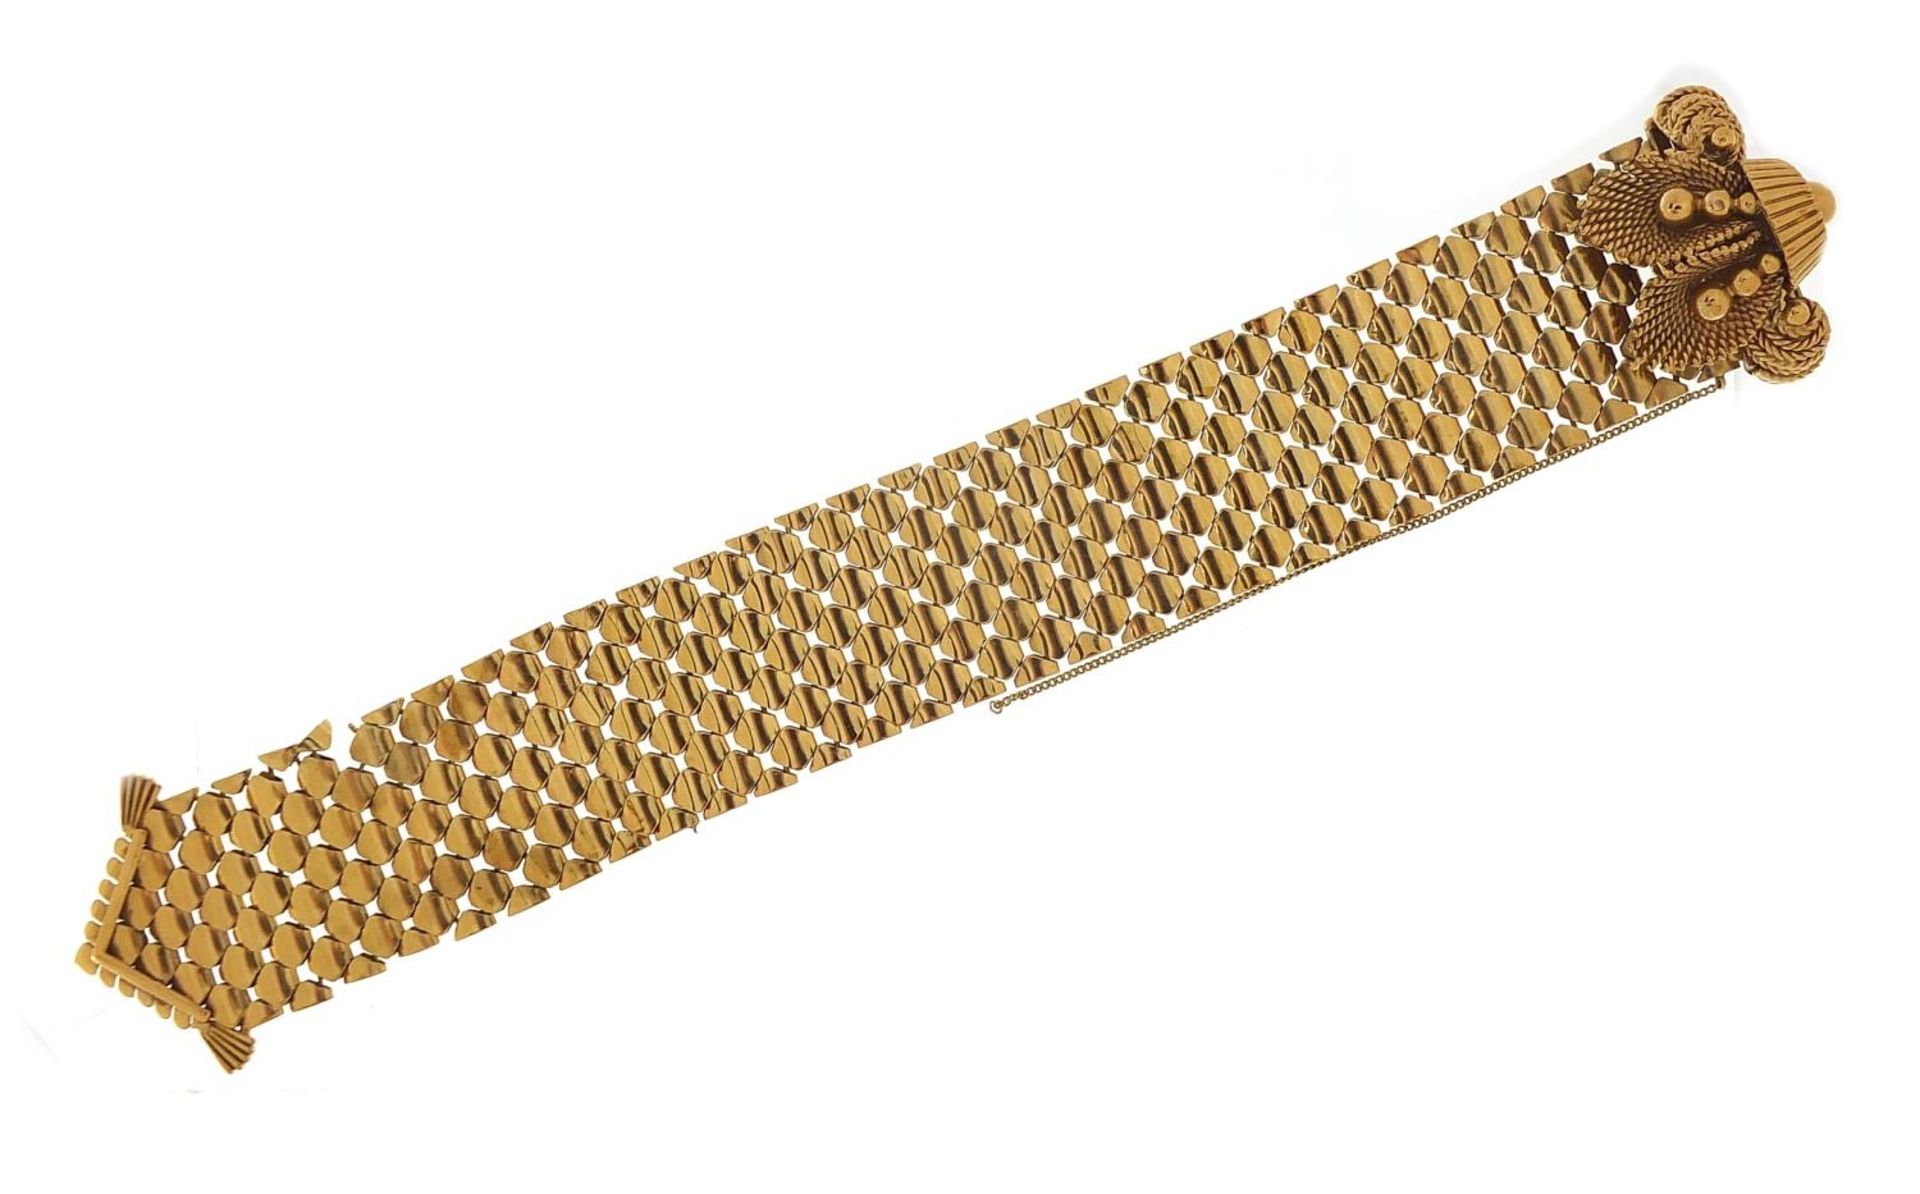 Large 9ct gold belt and buckle design bracelet with floral basket design clasp, S & SLD maker's - Bild 3 aus 5